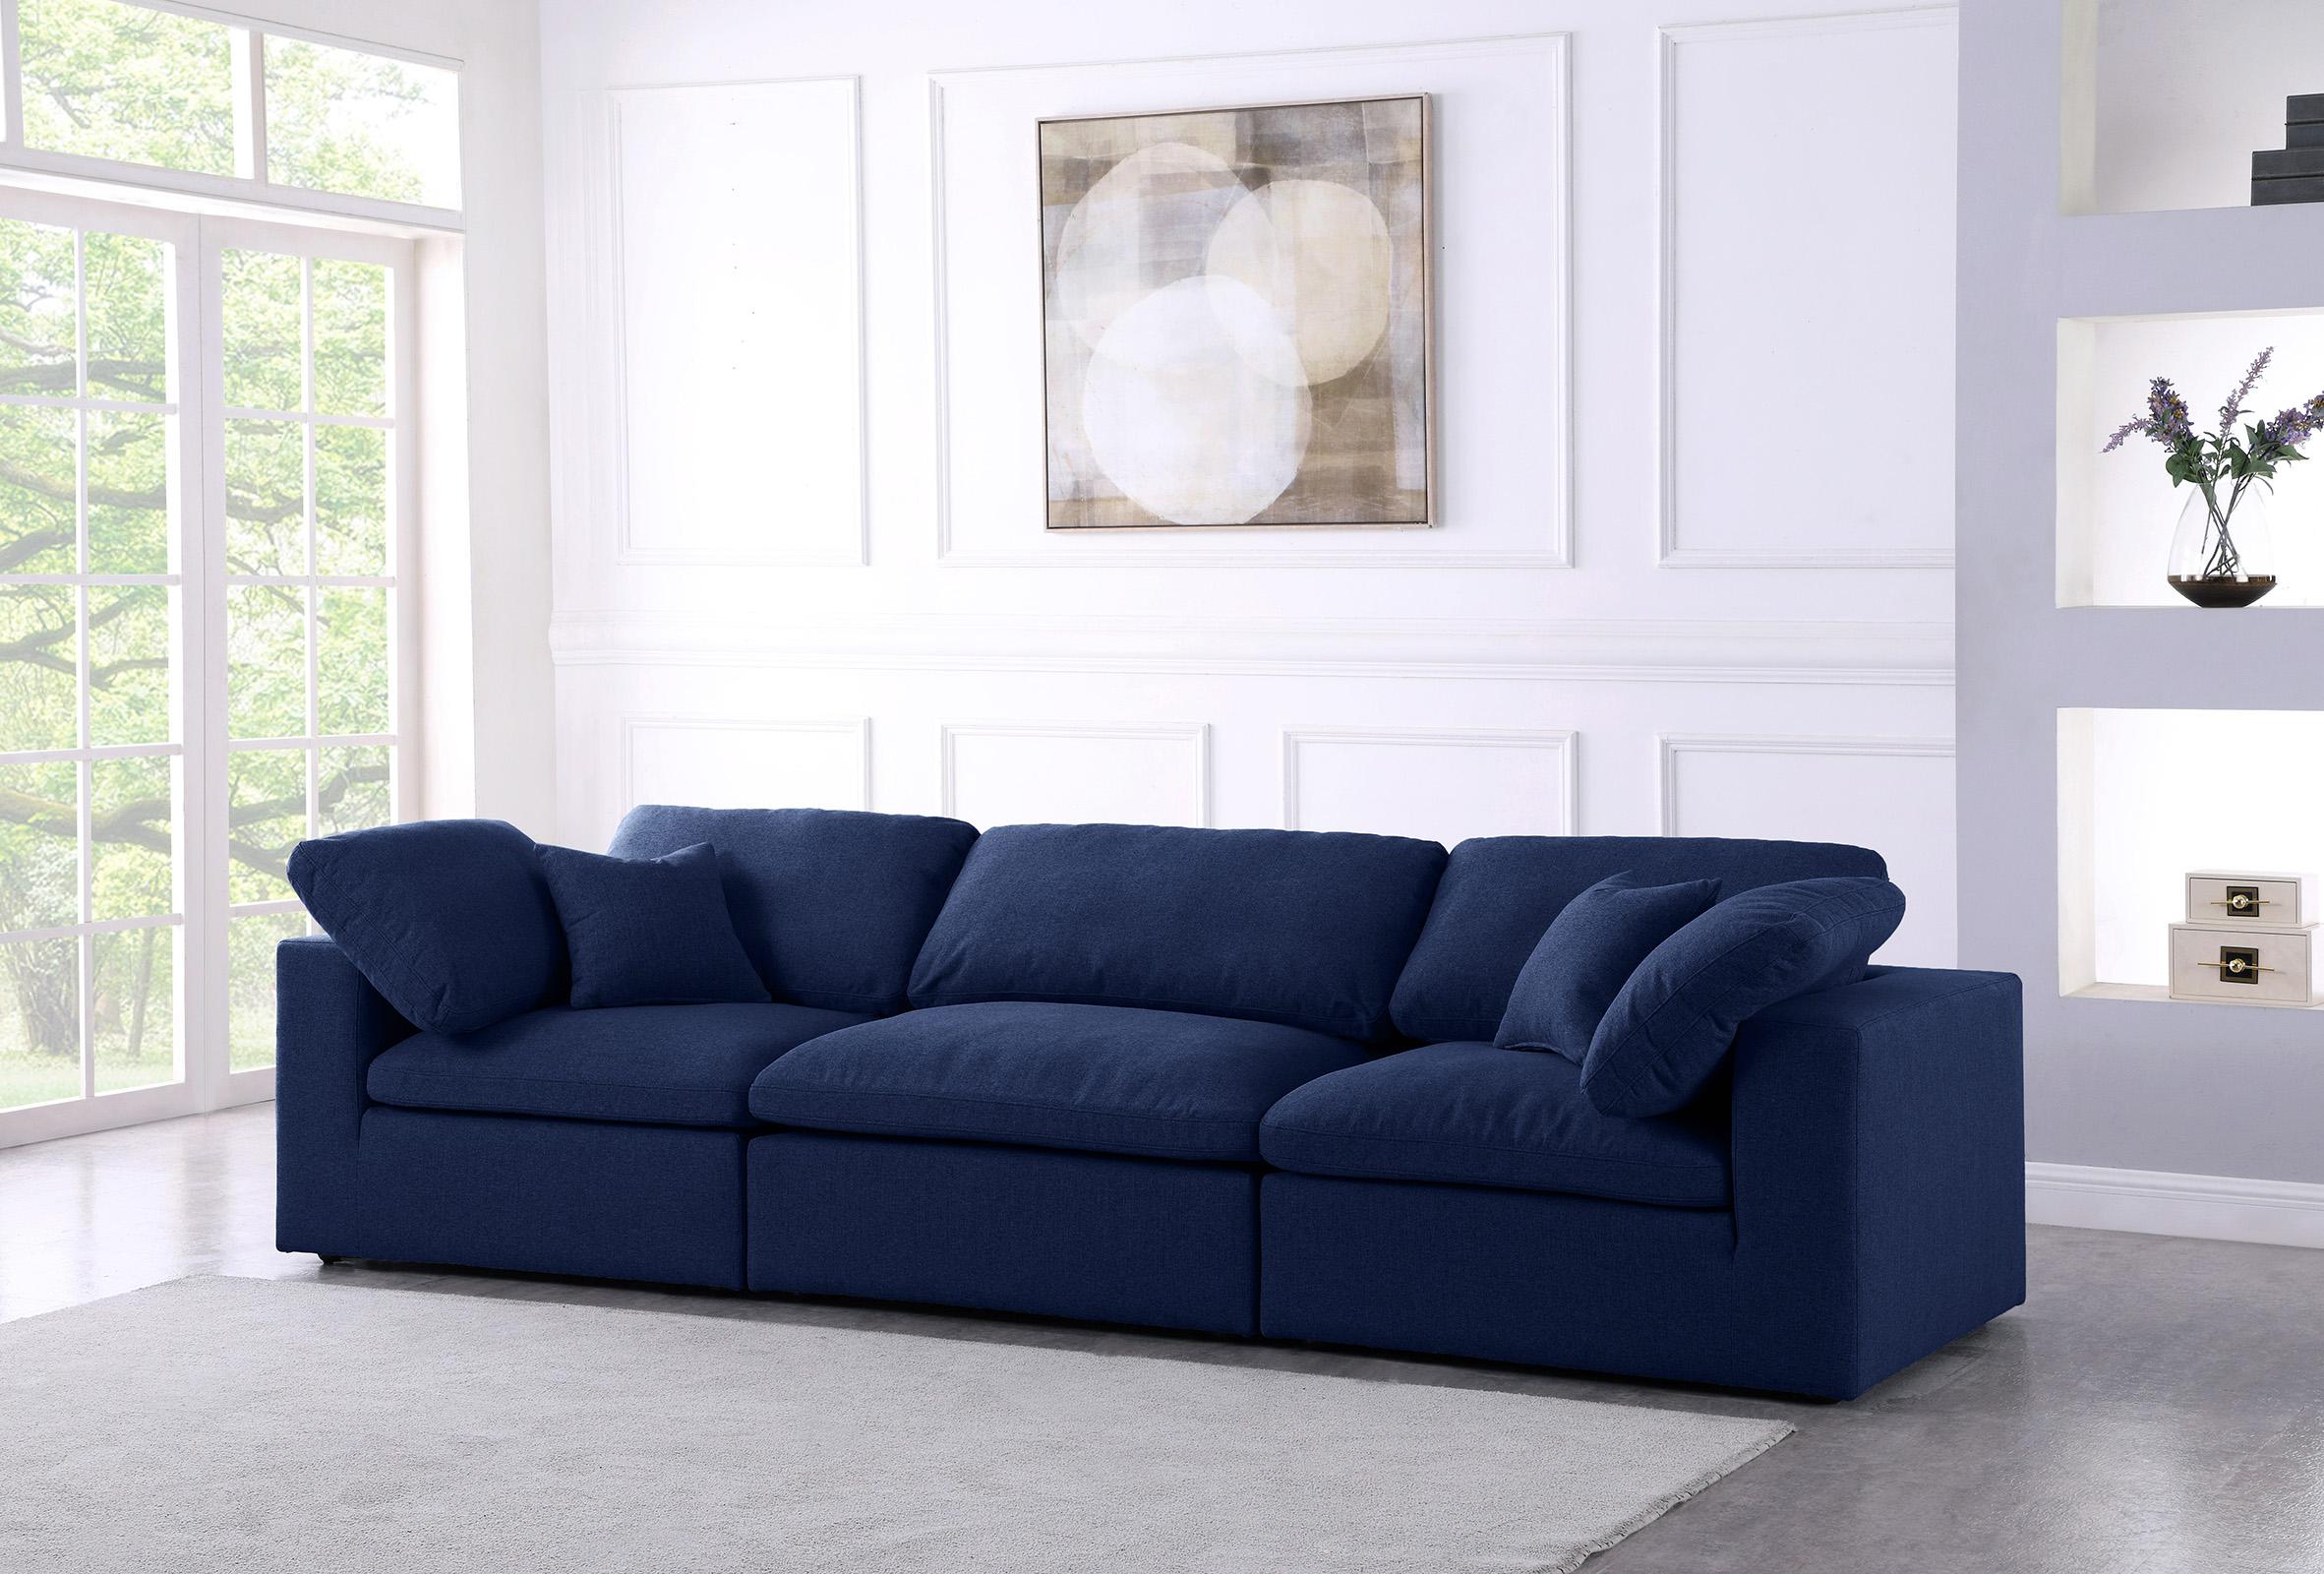 

    
Serene Navy Linen Textured Fabric Deluxe Comfort Modular Sofa S119 Meridian
